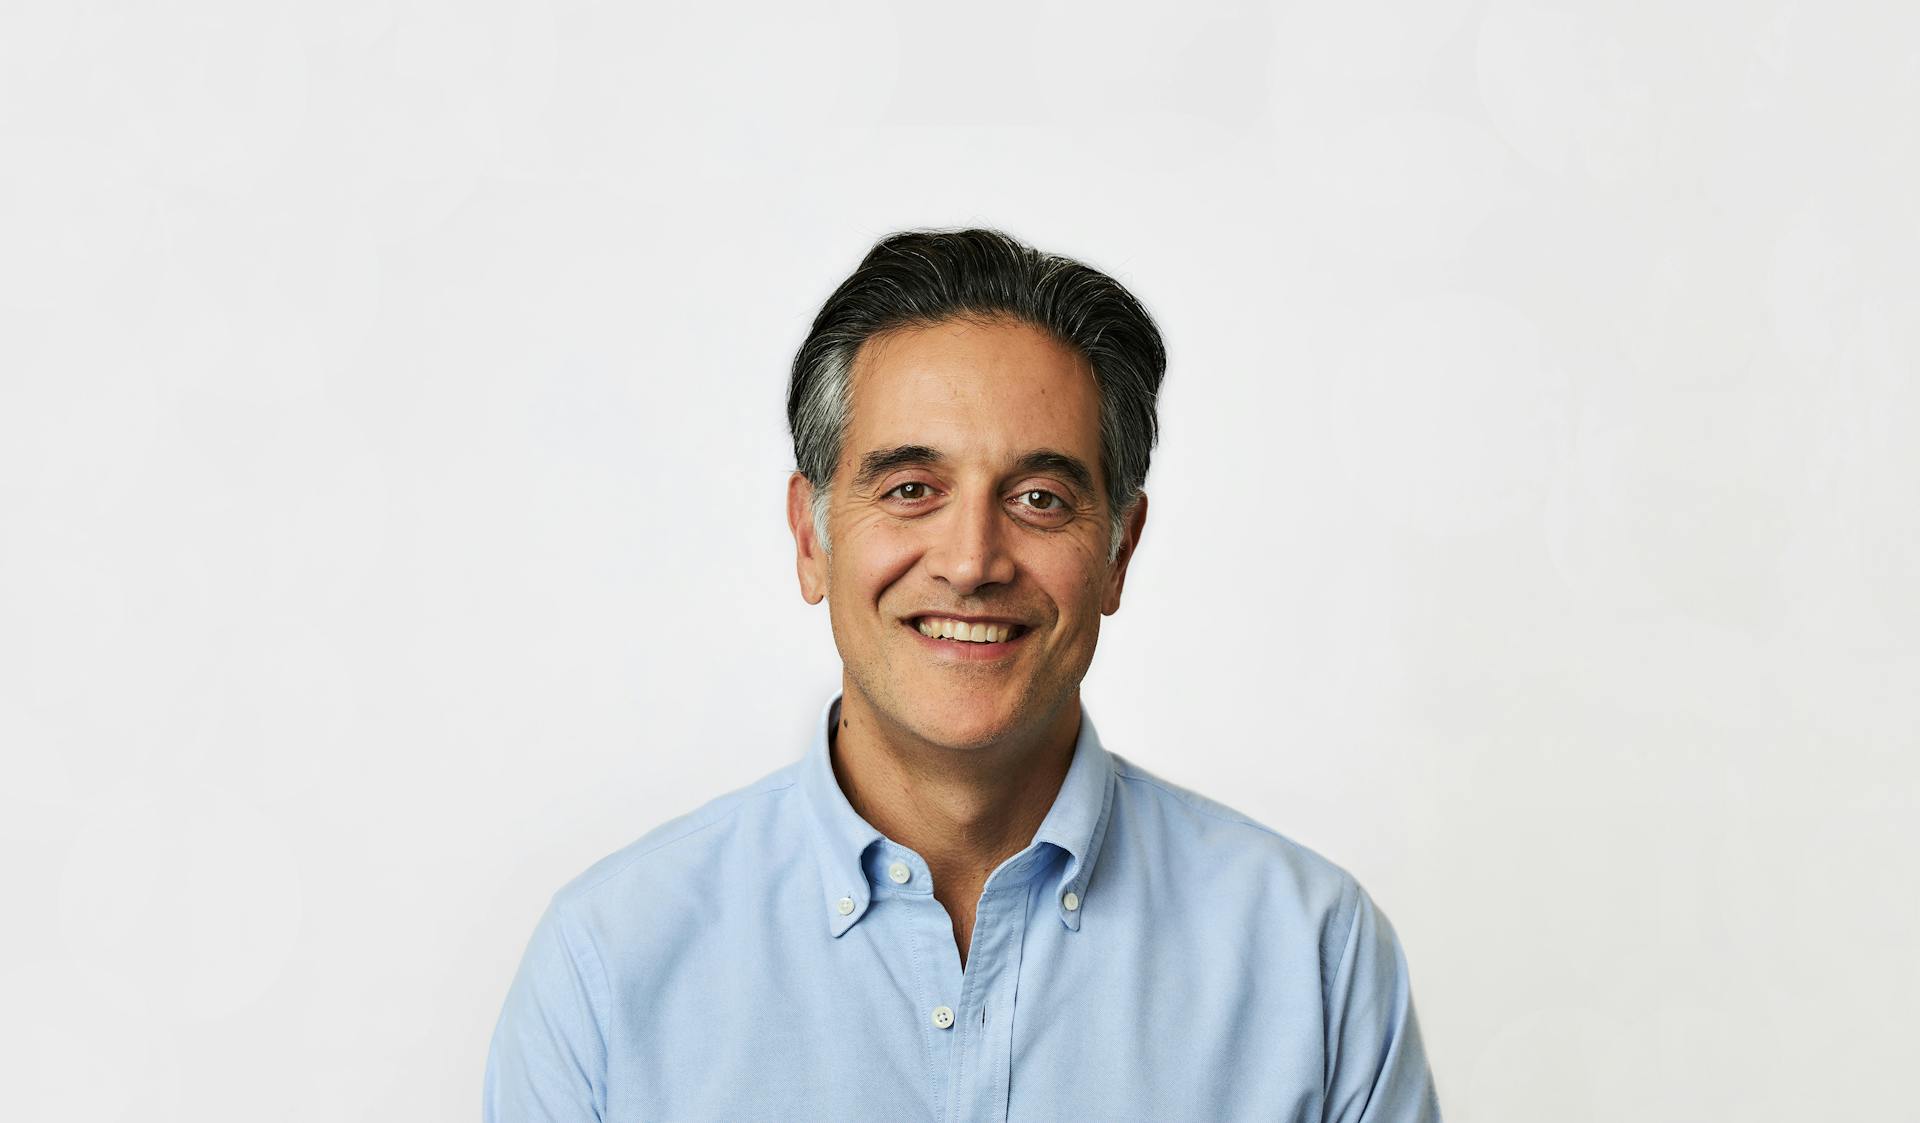 Imagen del Dr. B  director ejecutivo, Cyrus Massoumi, sonriendo con una camisa azul